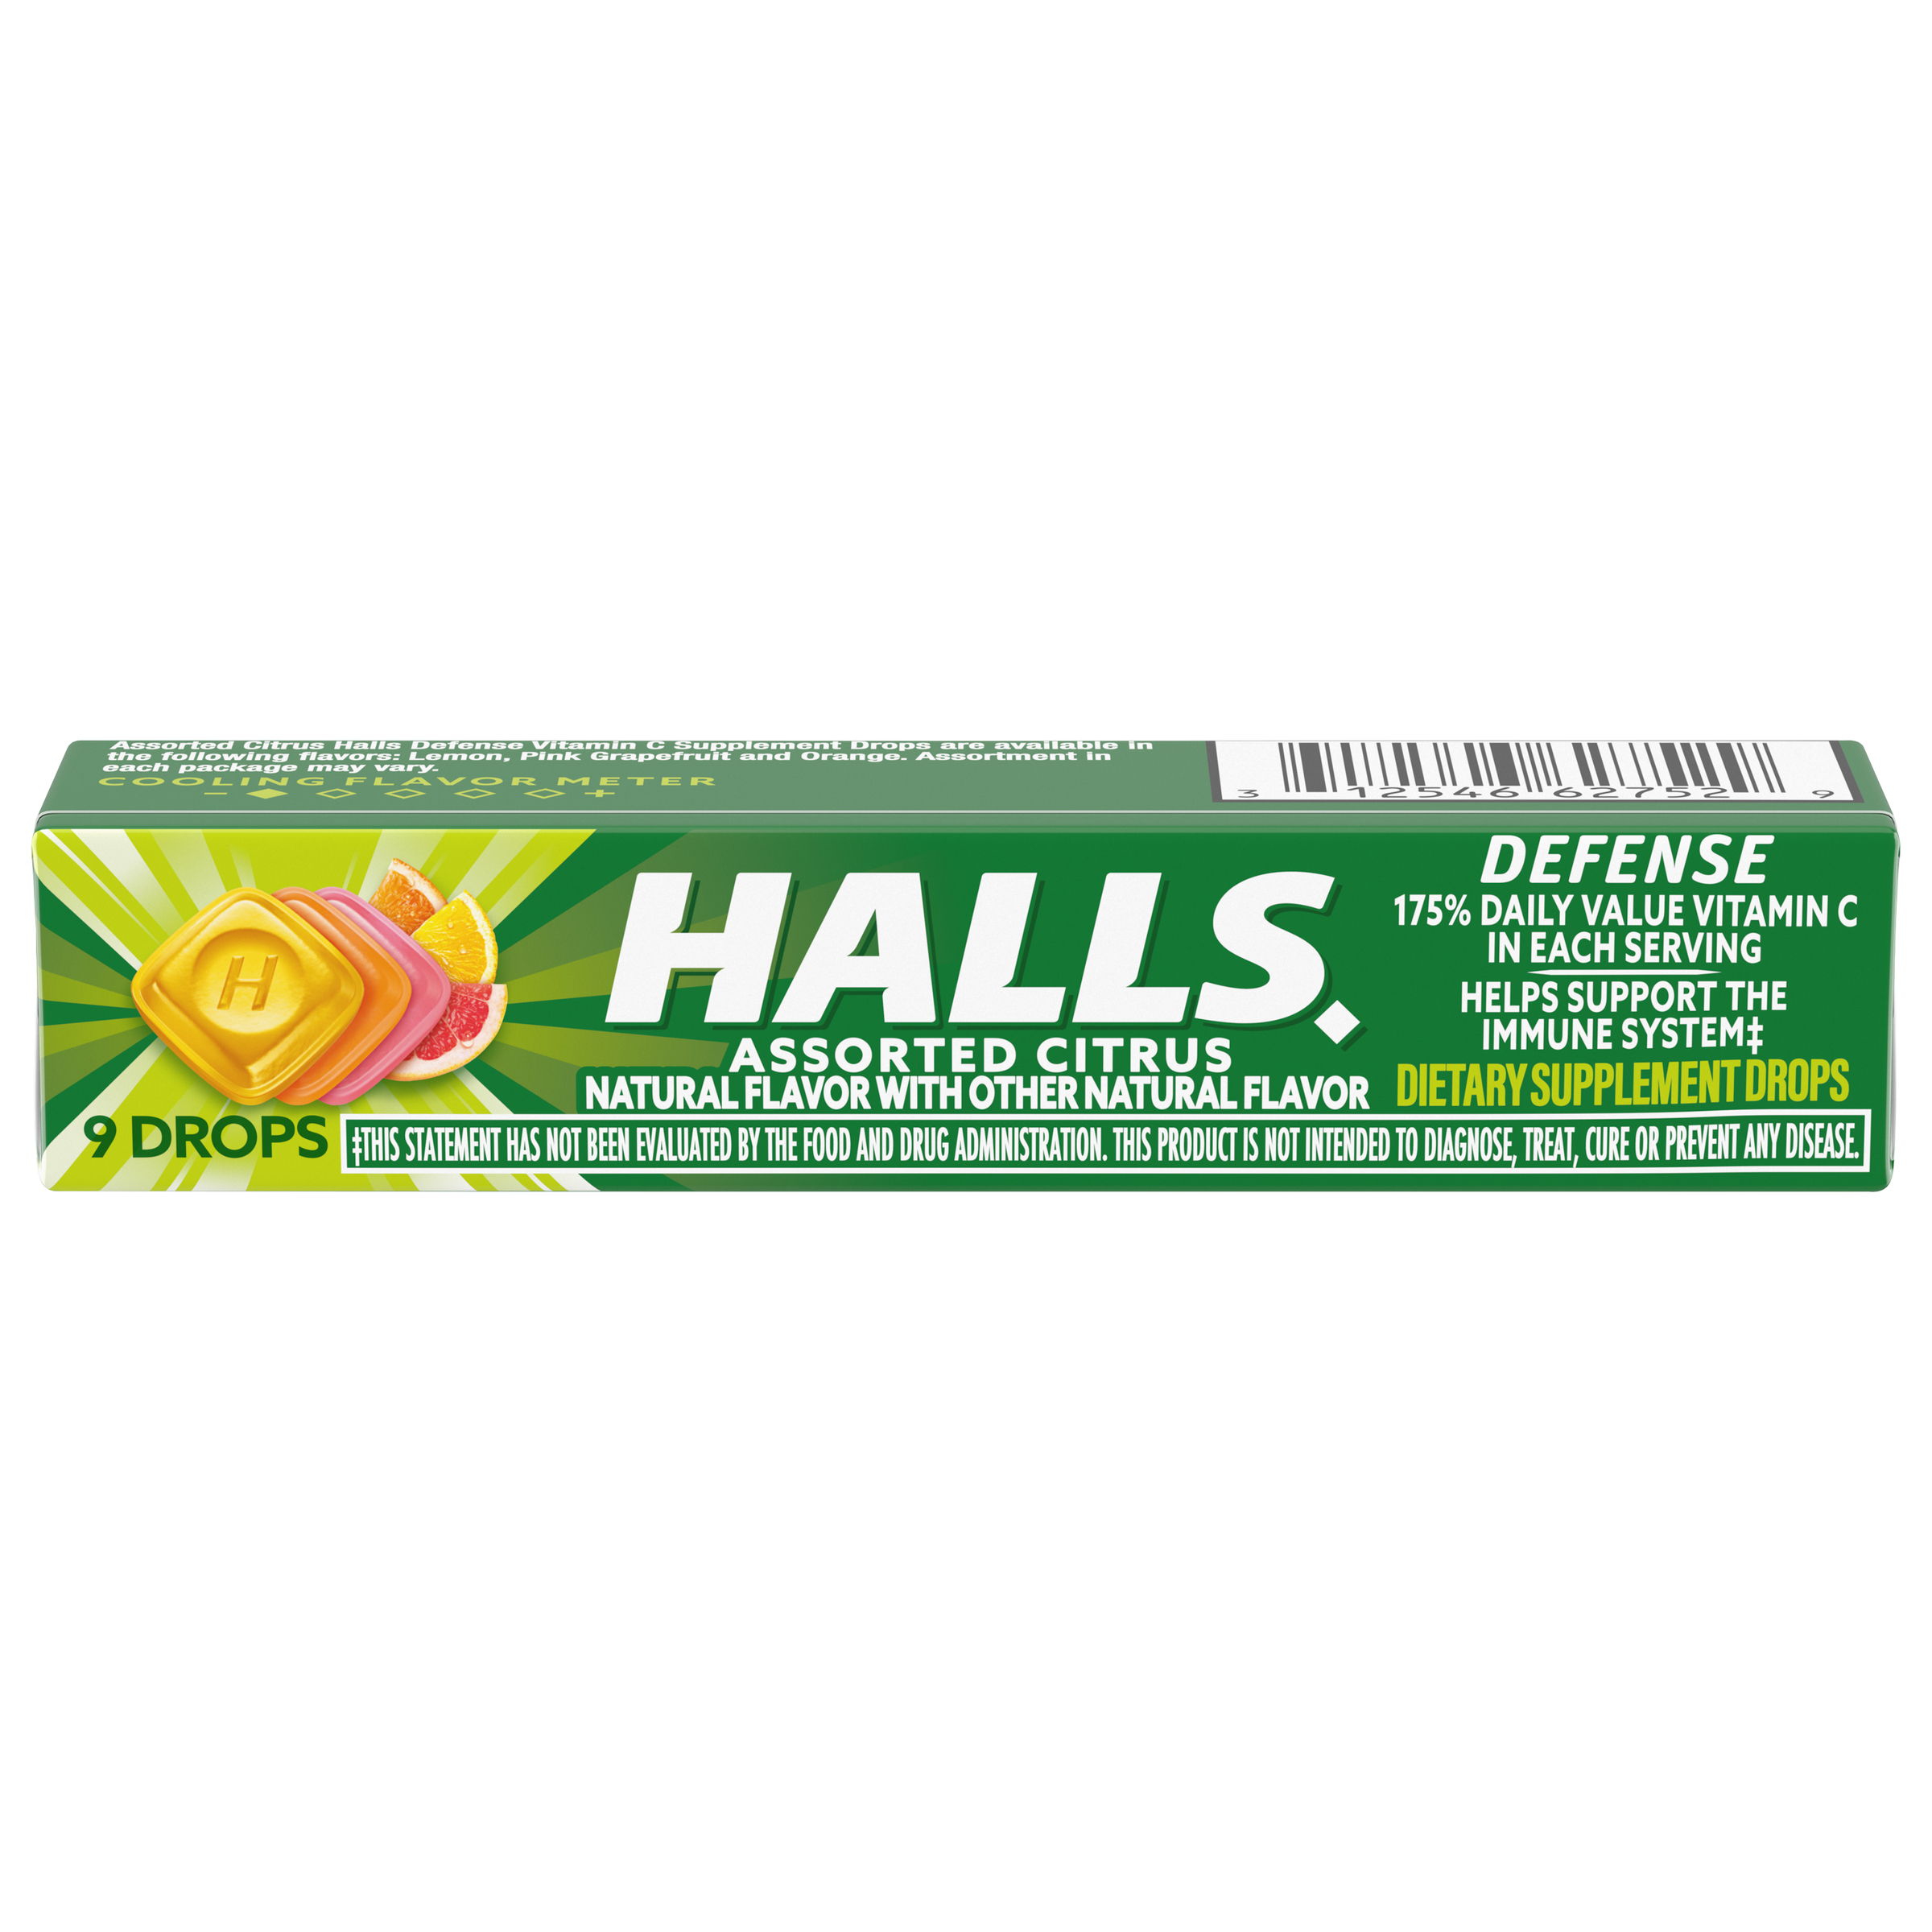 HALLS Defense Dietary Supplement Drops - Assorted Citrus